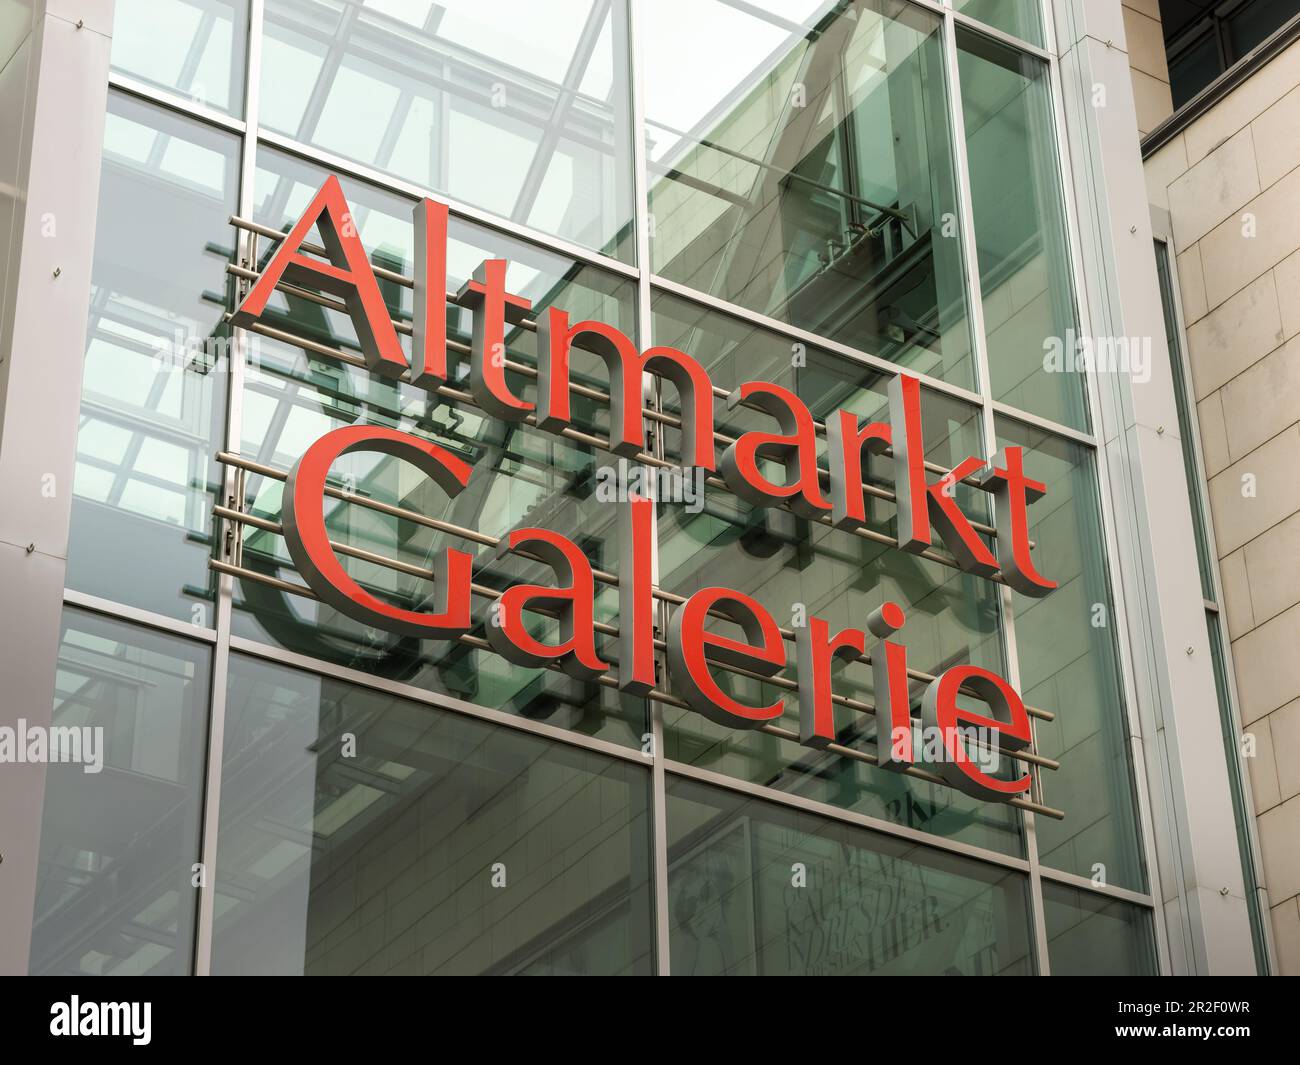 Logo der Altmarkt Galerie an der Fassade des großen Einkaufszentrums. Das Gebäude befindet sich an der Außenseite des Einkaufszentrums mit vielen Geschäften in Sachsen. Stockfoto